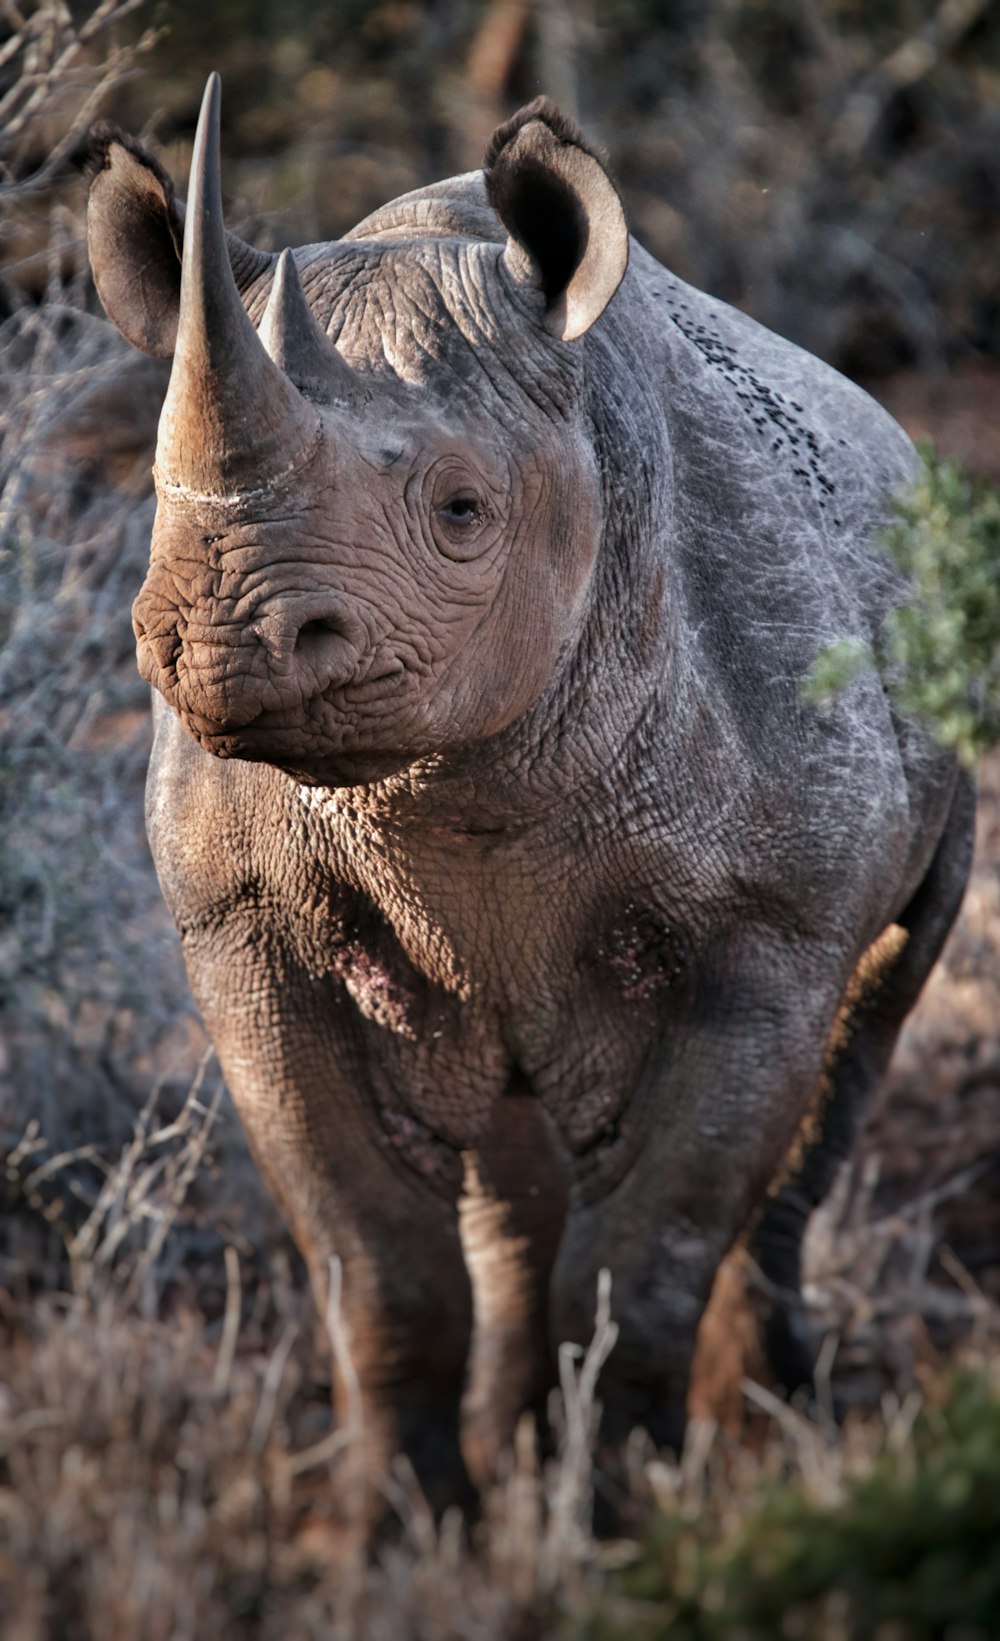 a rhinoceros is standing in a field